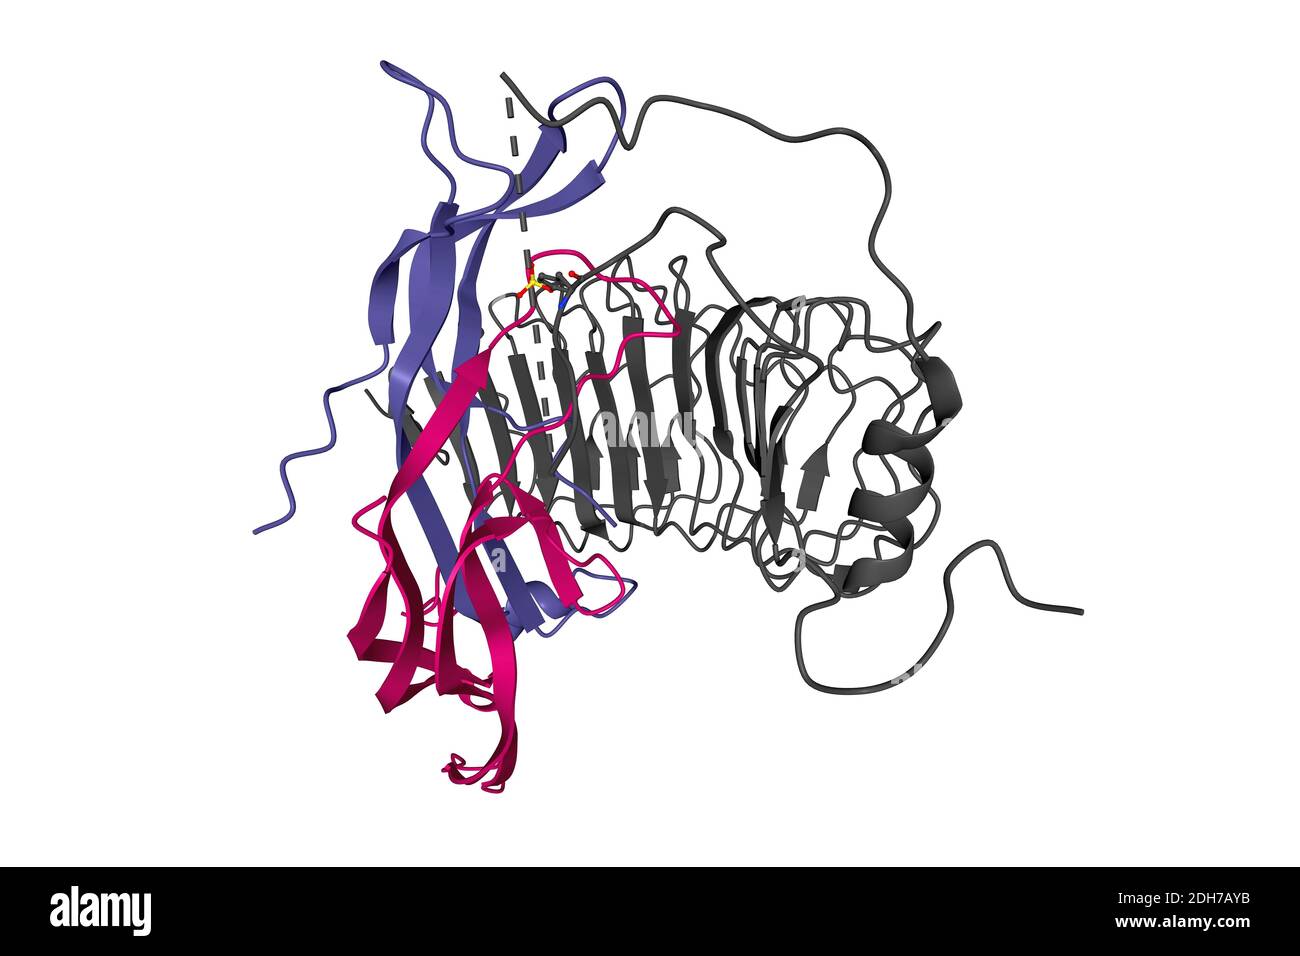 Struktur des follikelstimulierenden Hormons (Farbe) im Komplex mit der gesamten Ektodomäne seines Rezeptors (grau), 3D-Bändchenmodell, weißer Hintergrund Stockfoto